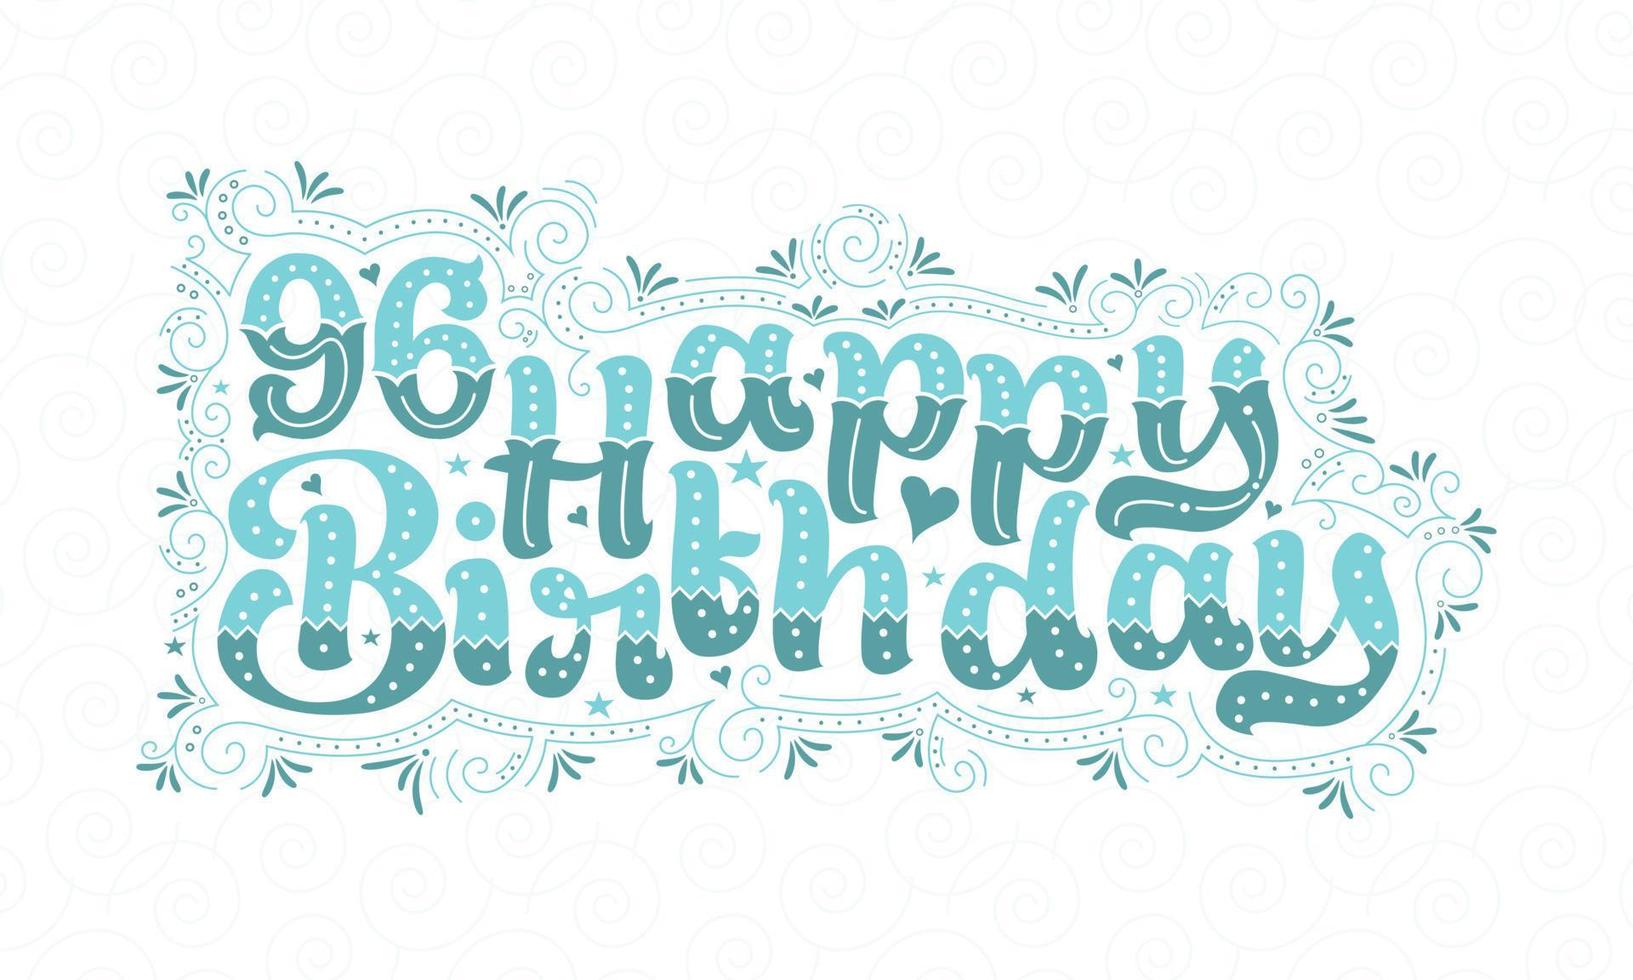 96. alles Gute zum Geburtstag Schriftzug, 96 Jahre Geburtstag schönes Typografie-Design mit Aquapunkten, Linien und Blättern. vektor